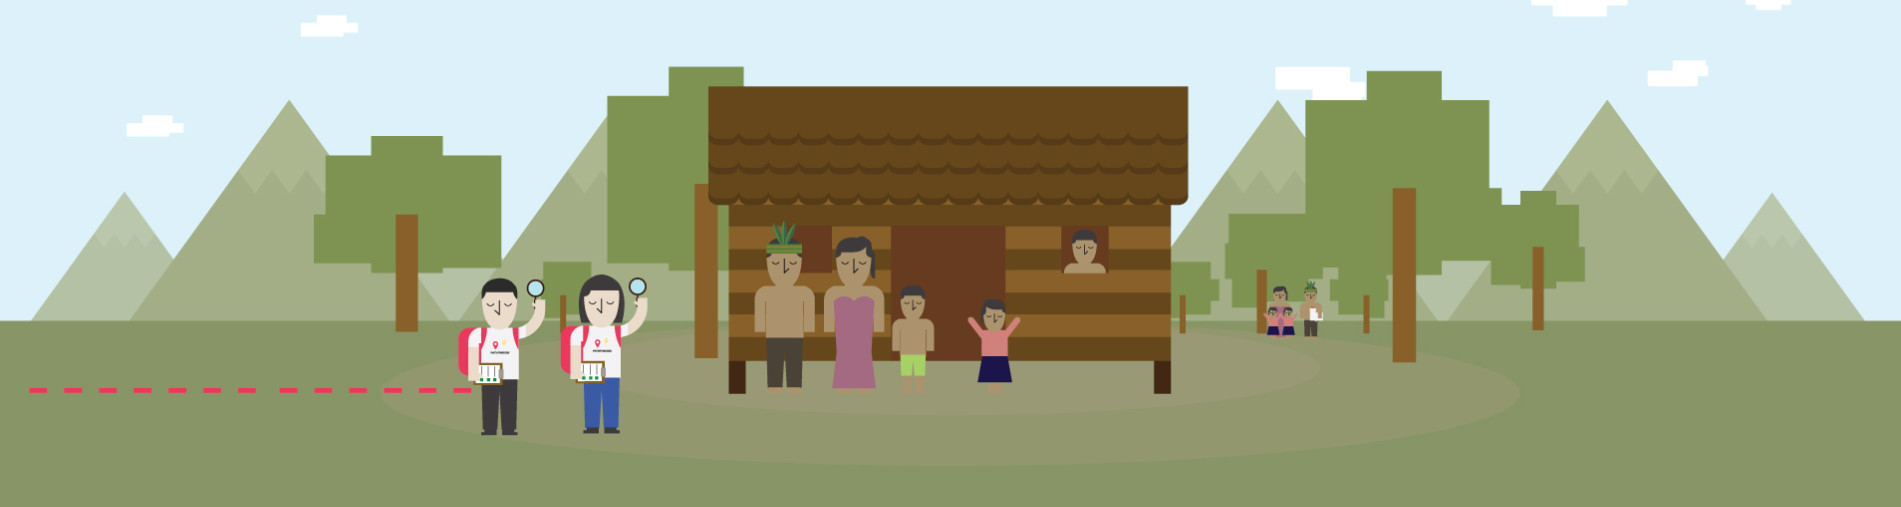 A Home for Orang Asli